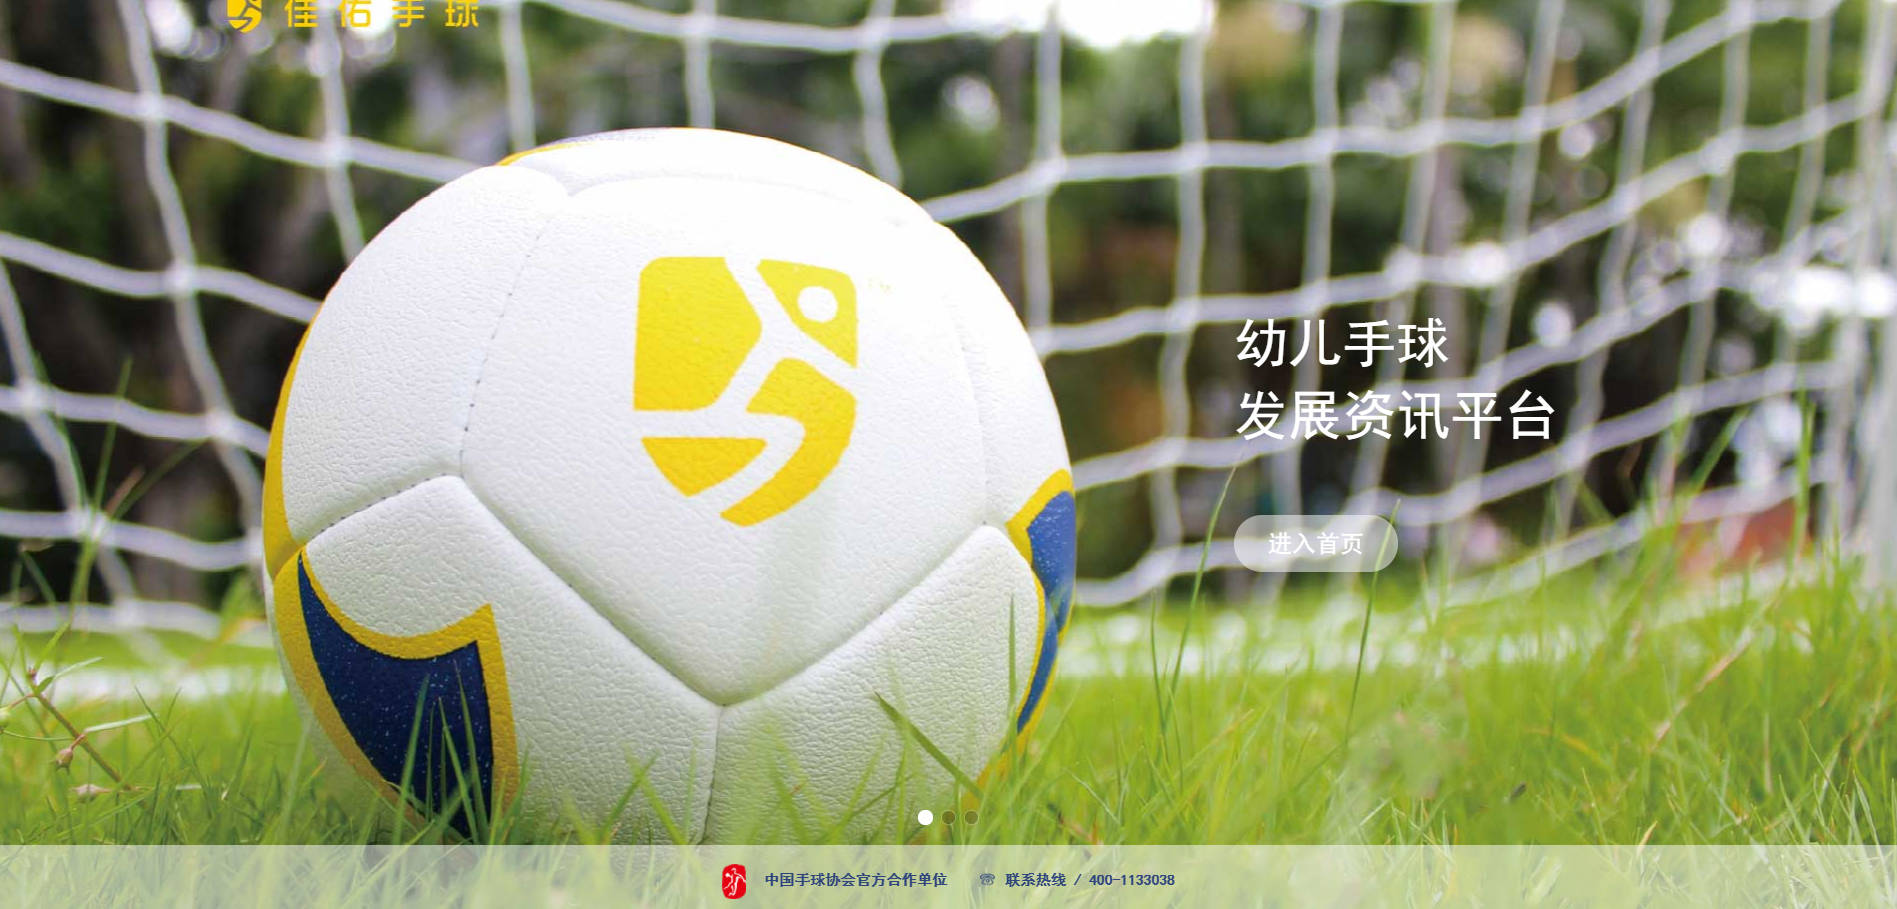 澳门威斯人官网-
“佳佑手球”官方网站正式上线！